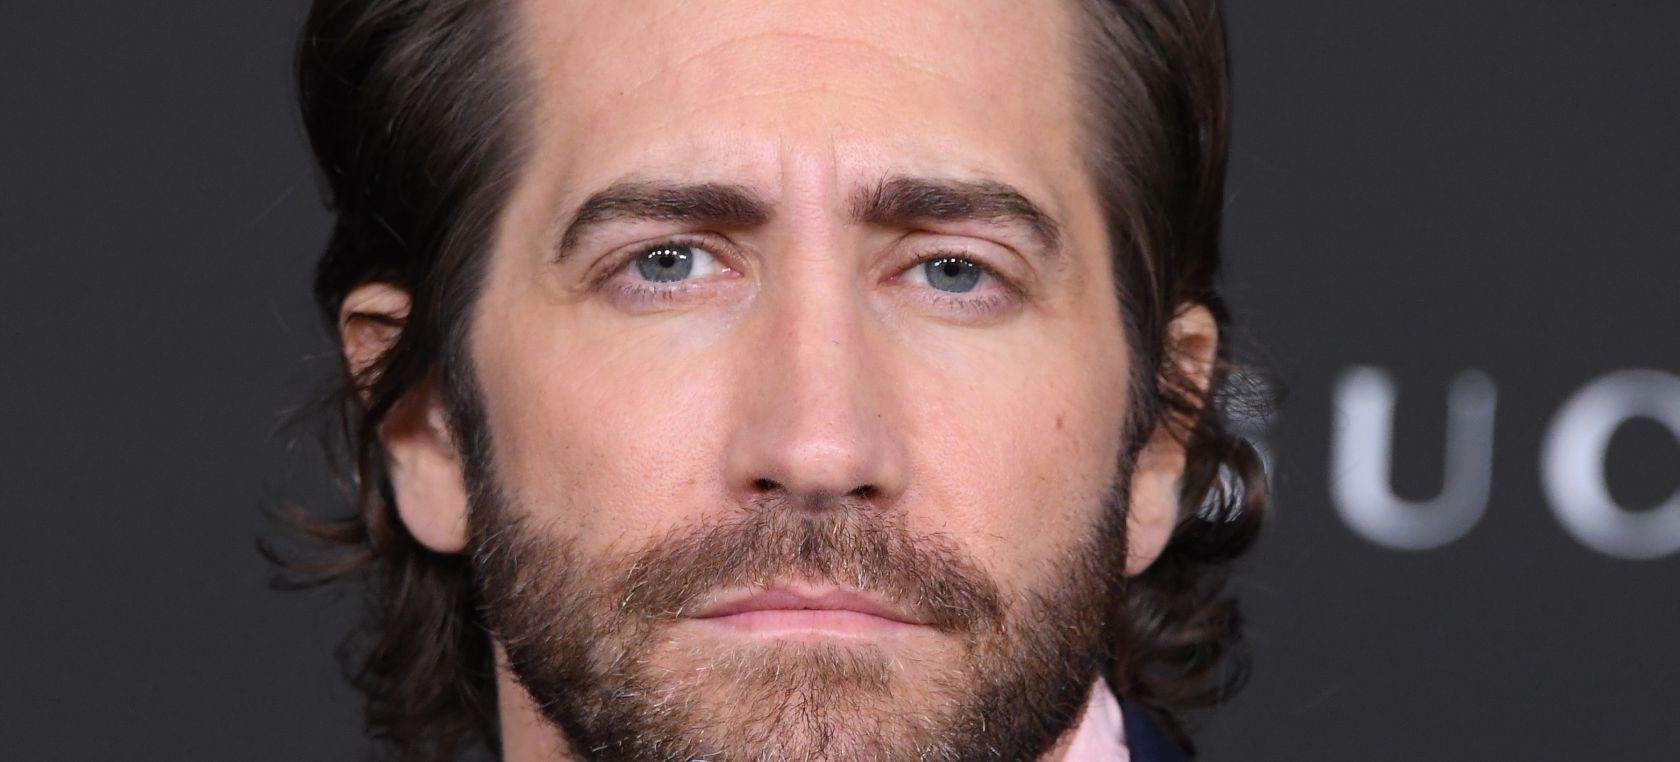 Revuelo en redes sociales por la sesión de fotos de Jake Gyllenhaal: ¿Es ‘Red’ (versión Jake)?